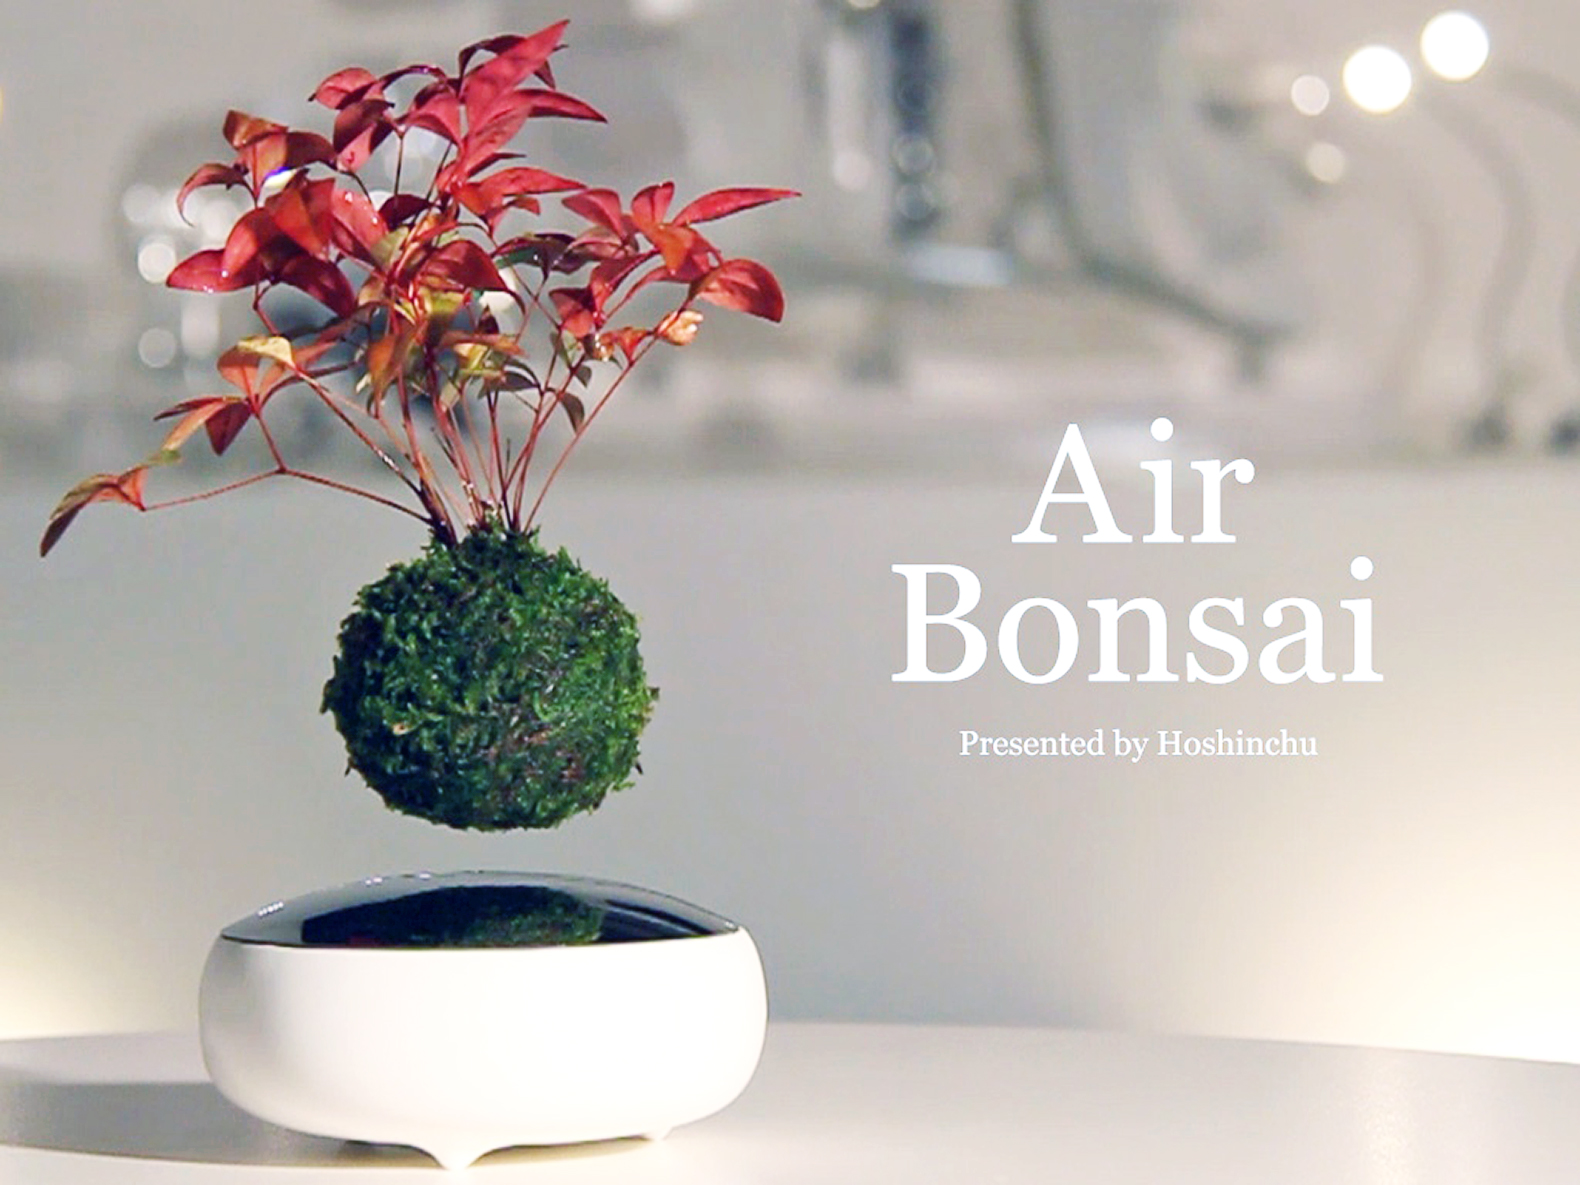 Công ty Hoshinchu có trụ sở tại Kyushu, Nhật Bản đã phát minh ra Air Bonsai khiến bạn mãn nhãn bởi vẻ đẹp siêu thực mà nó mang lại.